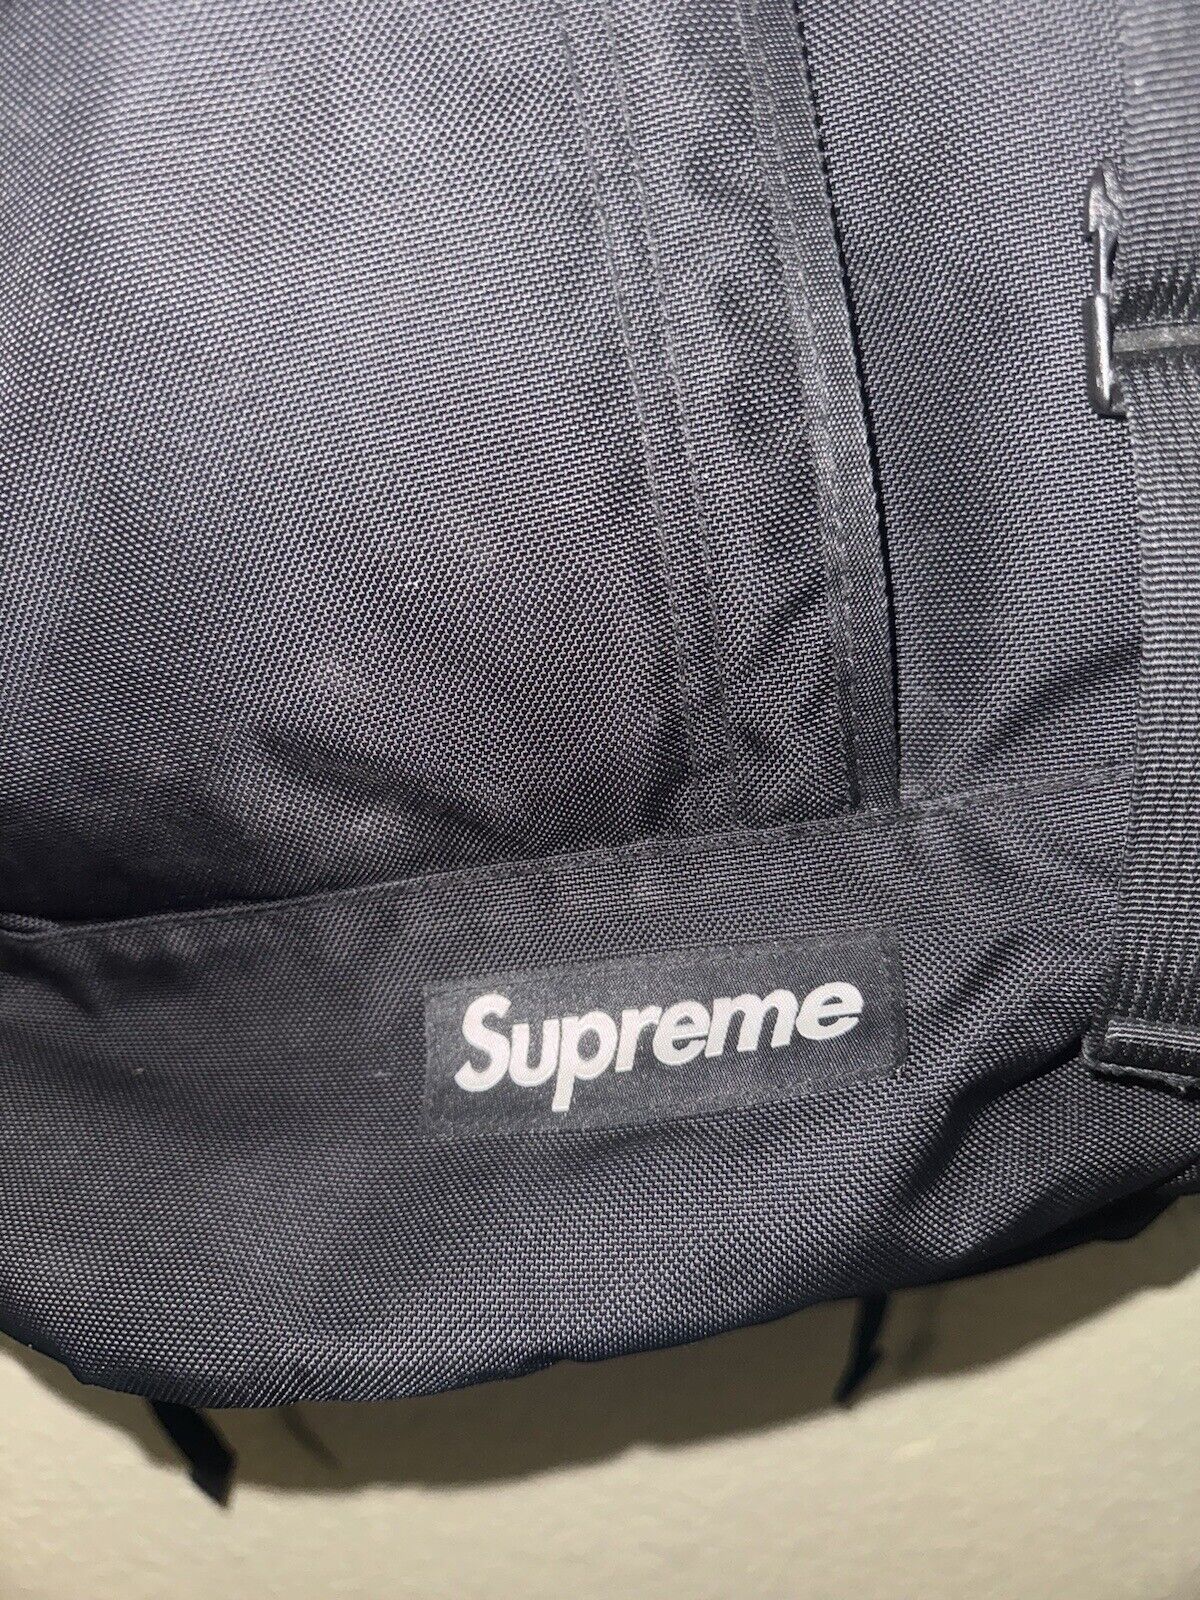 Supreme Backpack Black SS18 - image 2